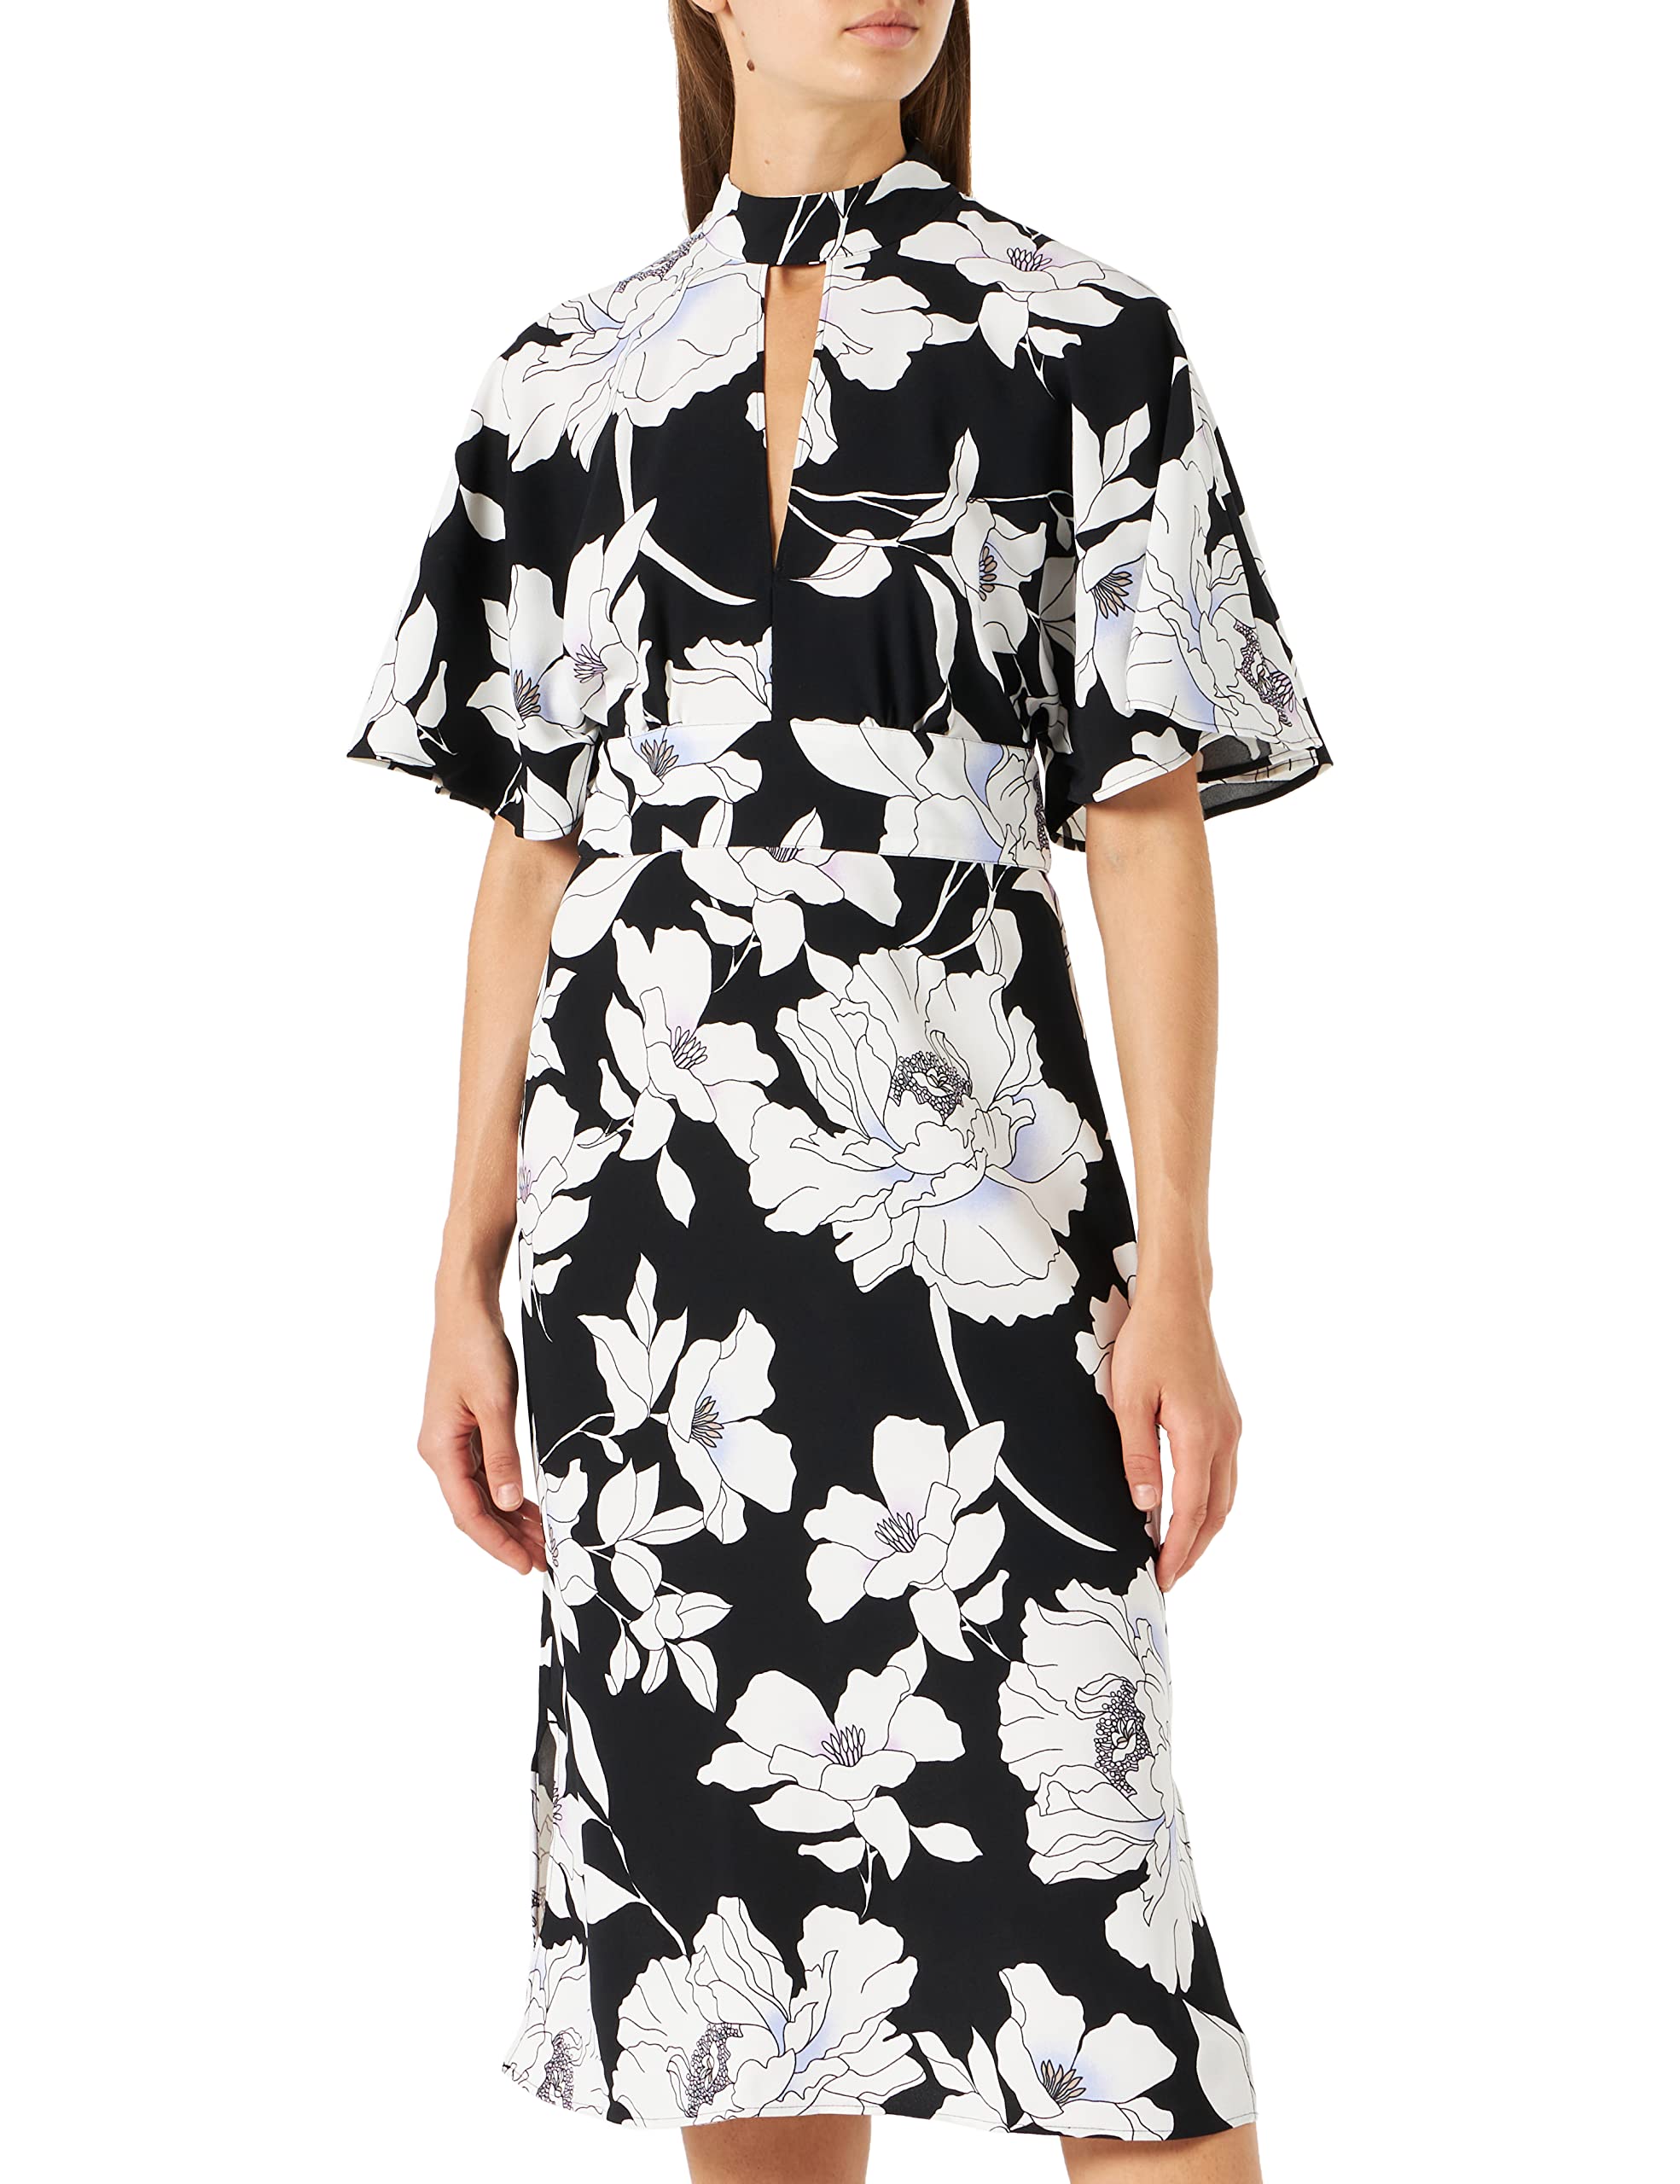 Truth & Fable Damen Midi A-Linien-Kleid, Schwarz Weiß Floral, 42